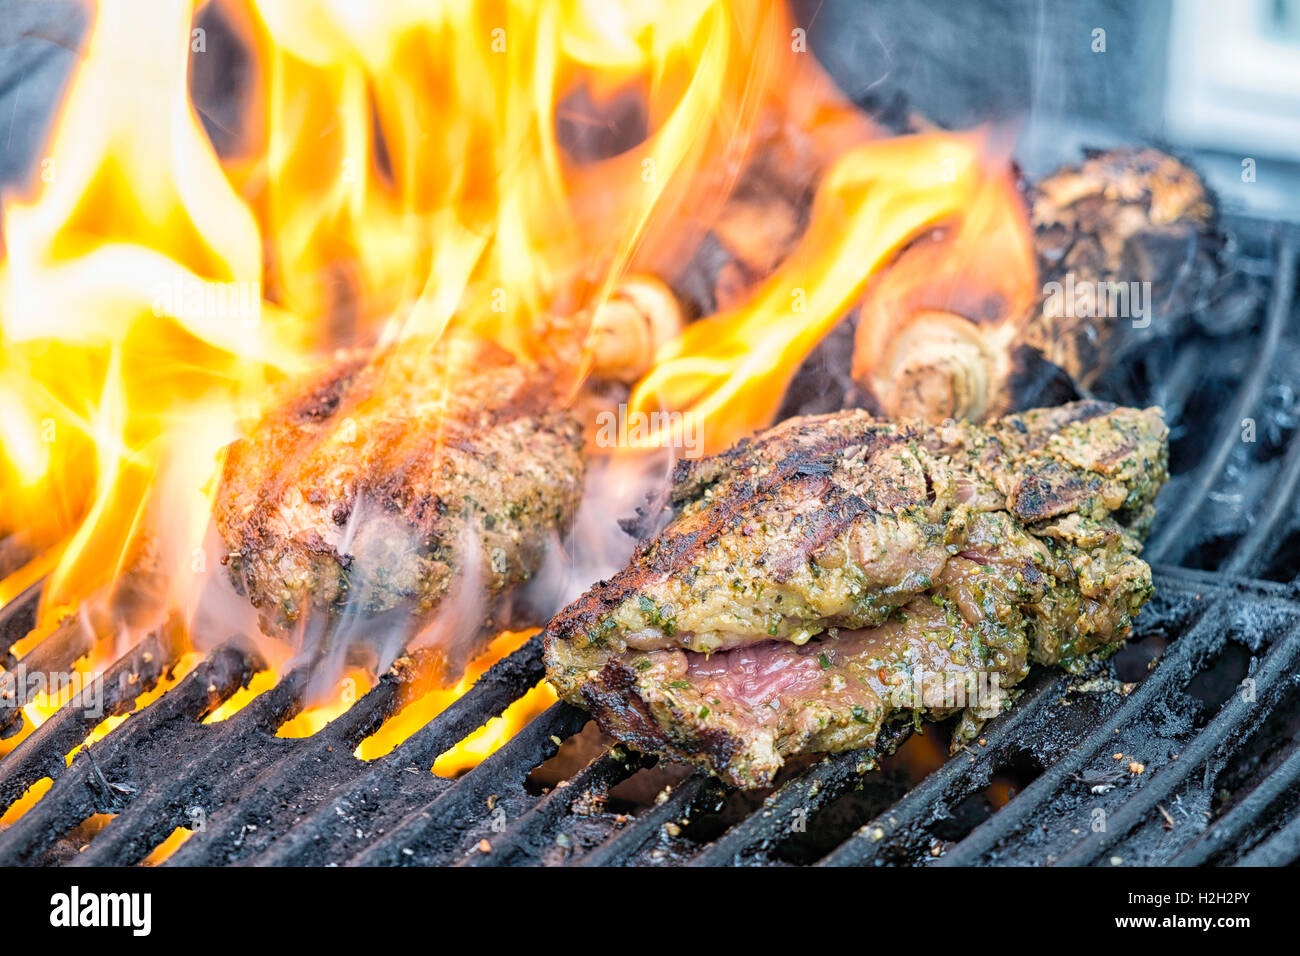 Les steaks marinés au barbecue, des flammes qui s'de de la graisse qui s'écoule de la viande dans le grill. Banque D'Images